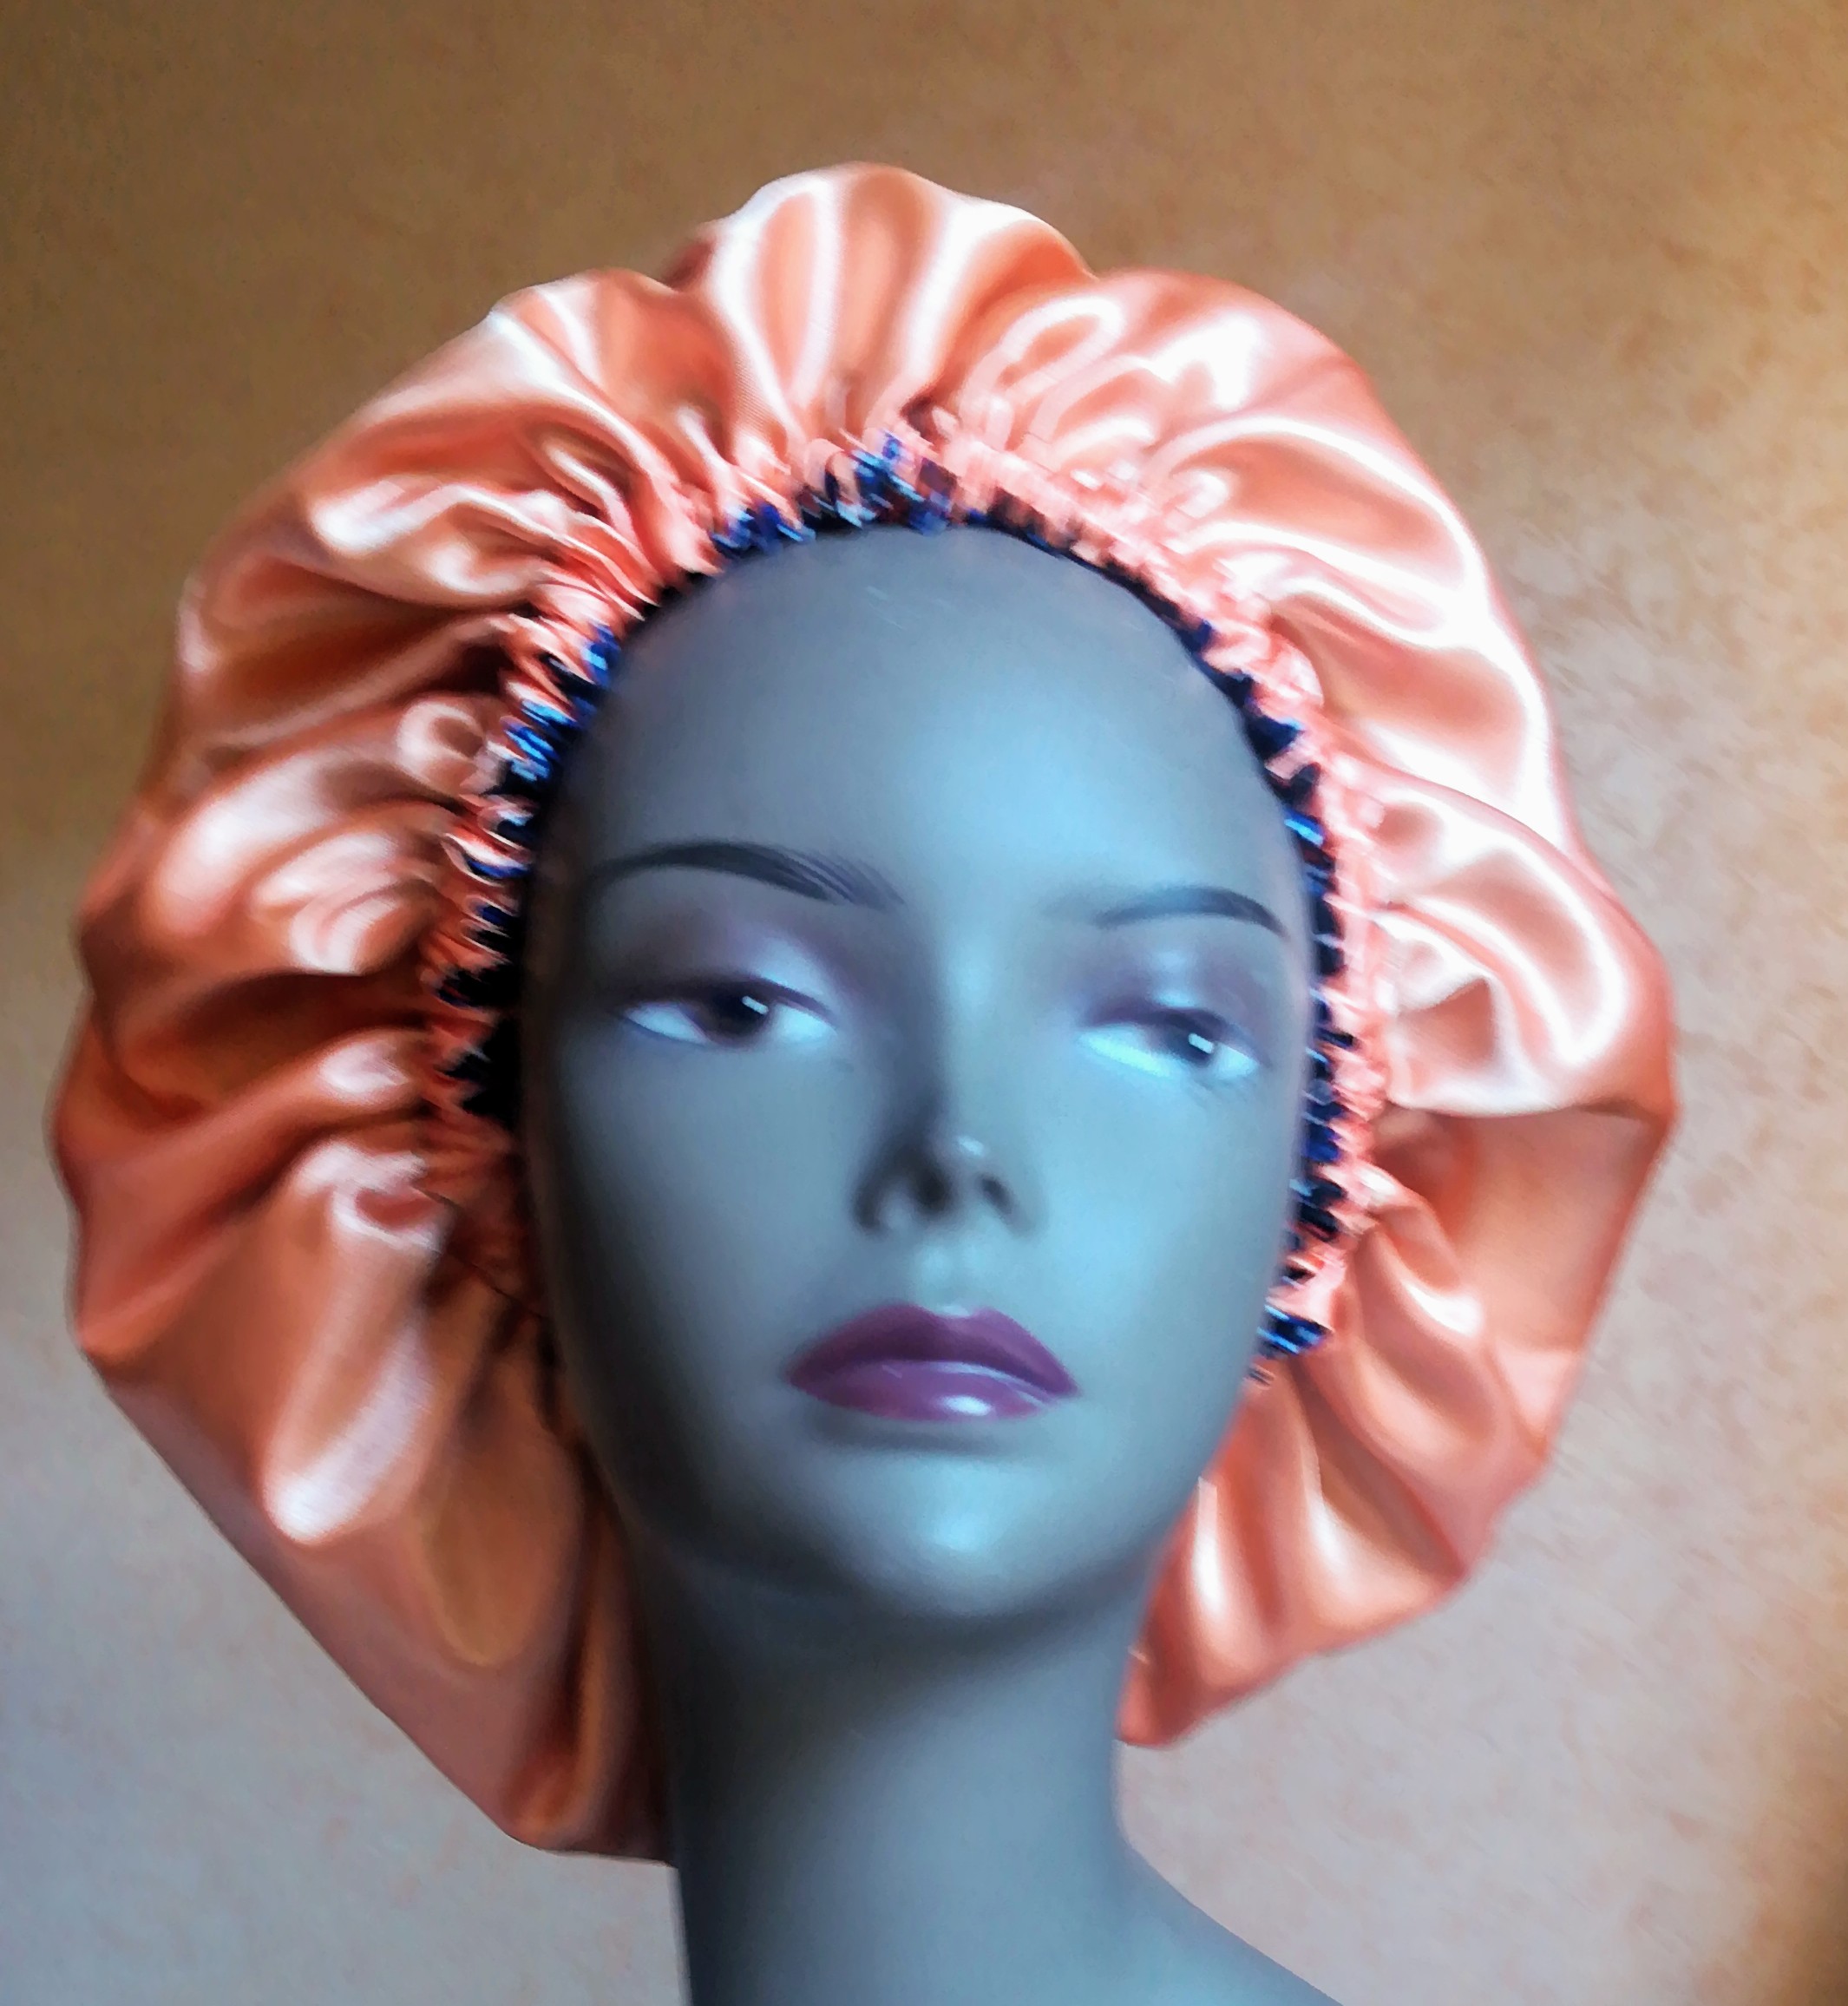 Bonnet Cheveux Adjibola en Tissu Wax et Satin de Soie - be-AMY